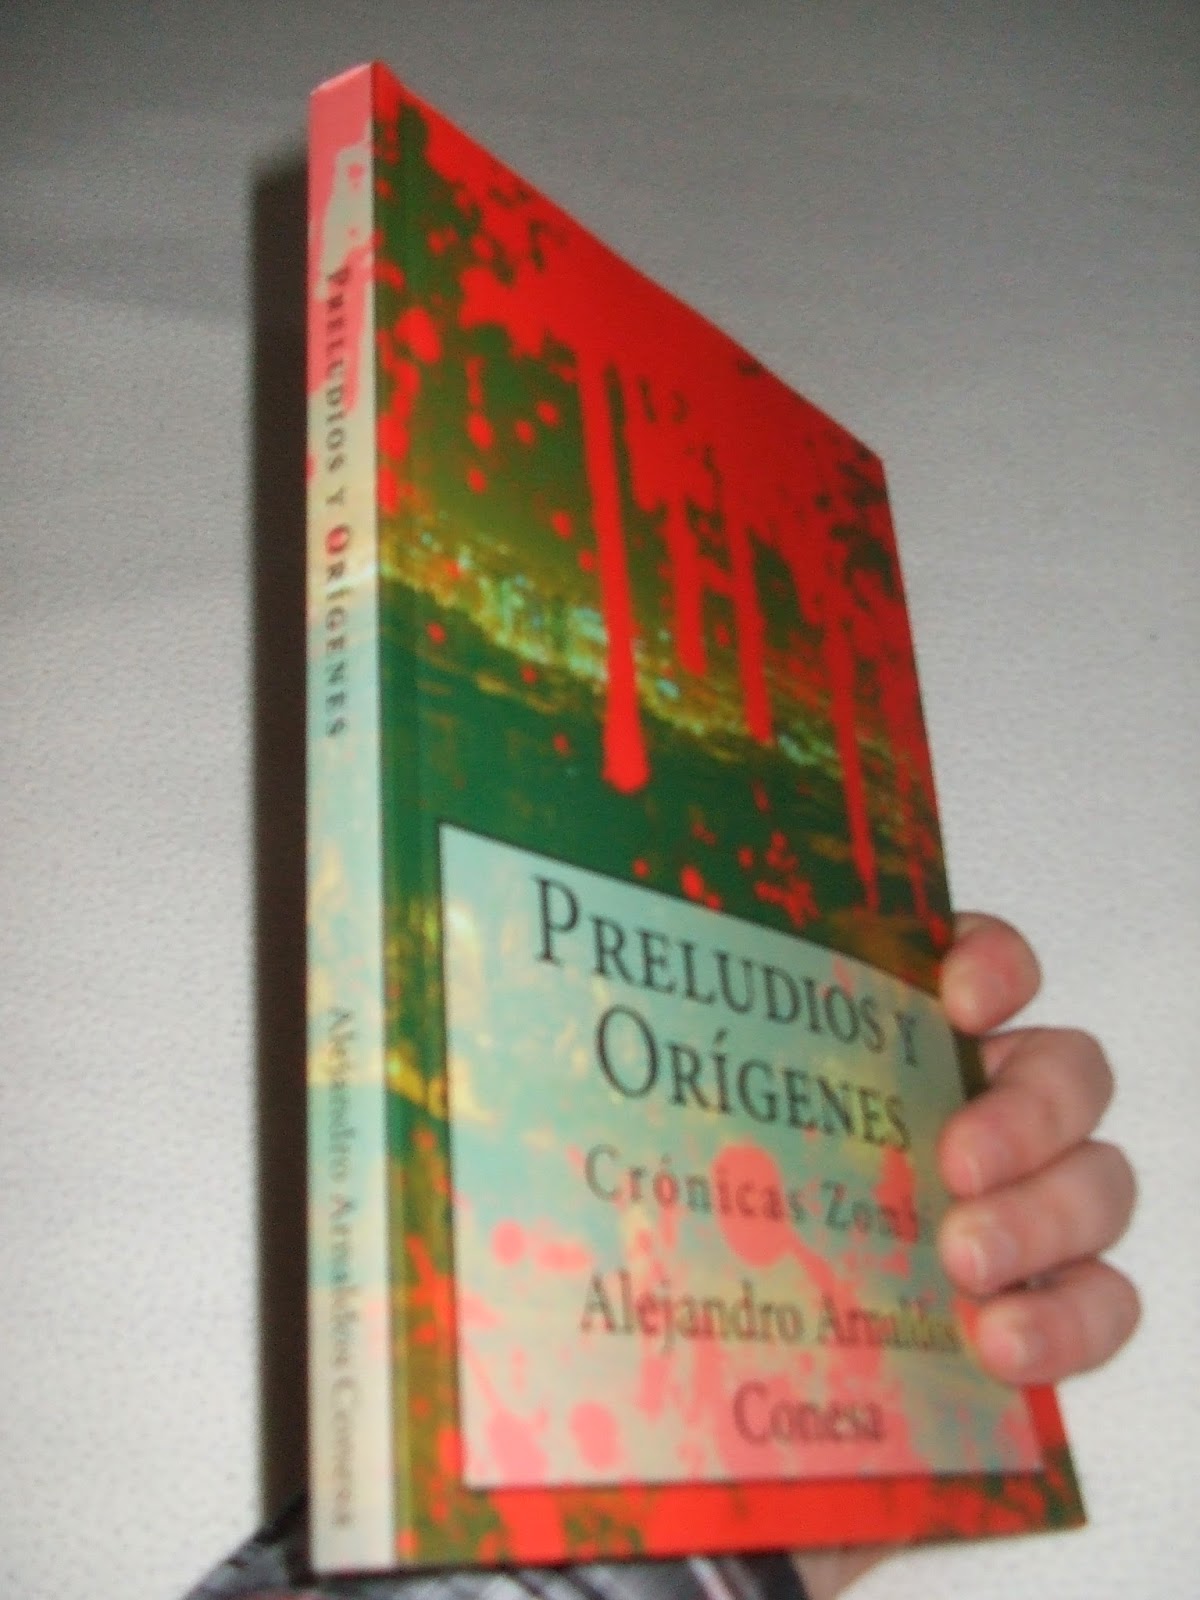 http://www.amazon.es/Preludios-Or%C3%ADgenes-Alejandor-Arnaldos-Conesa/dp/1499503431/ref=tmm_pap_title_0?ie=UTF8&qid=1372070195&sr=1-2